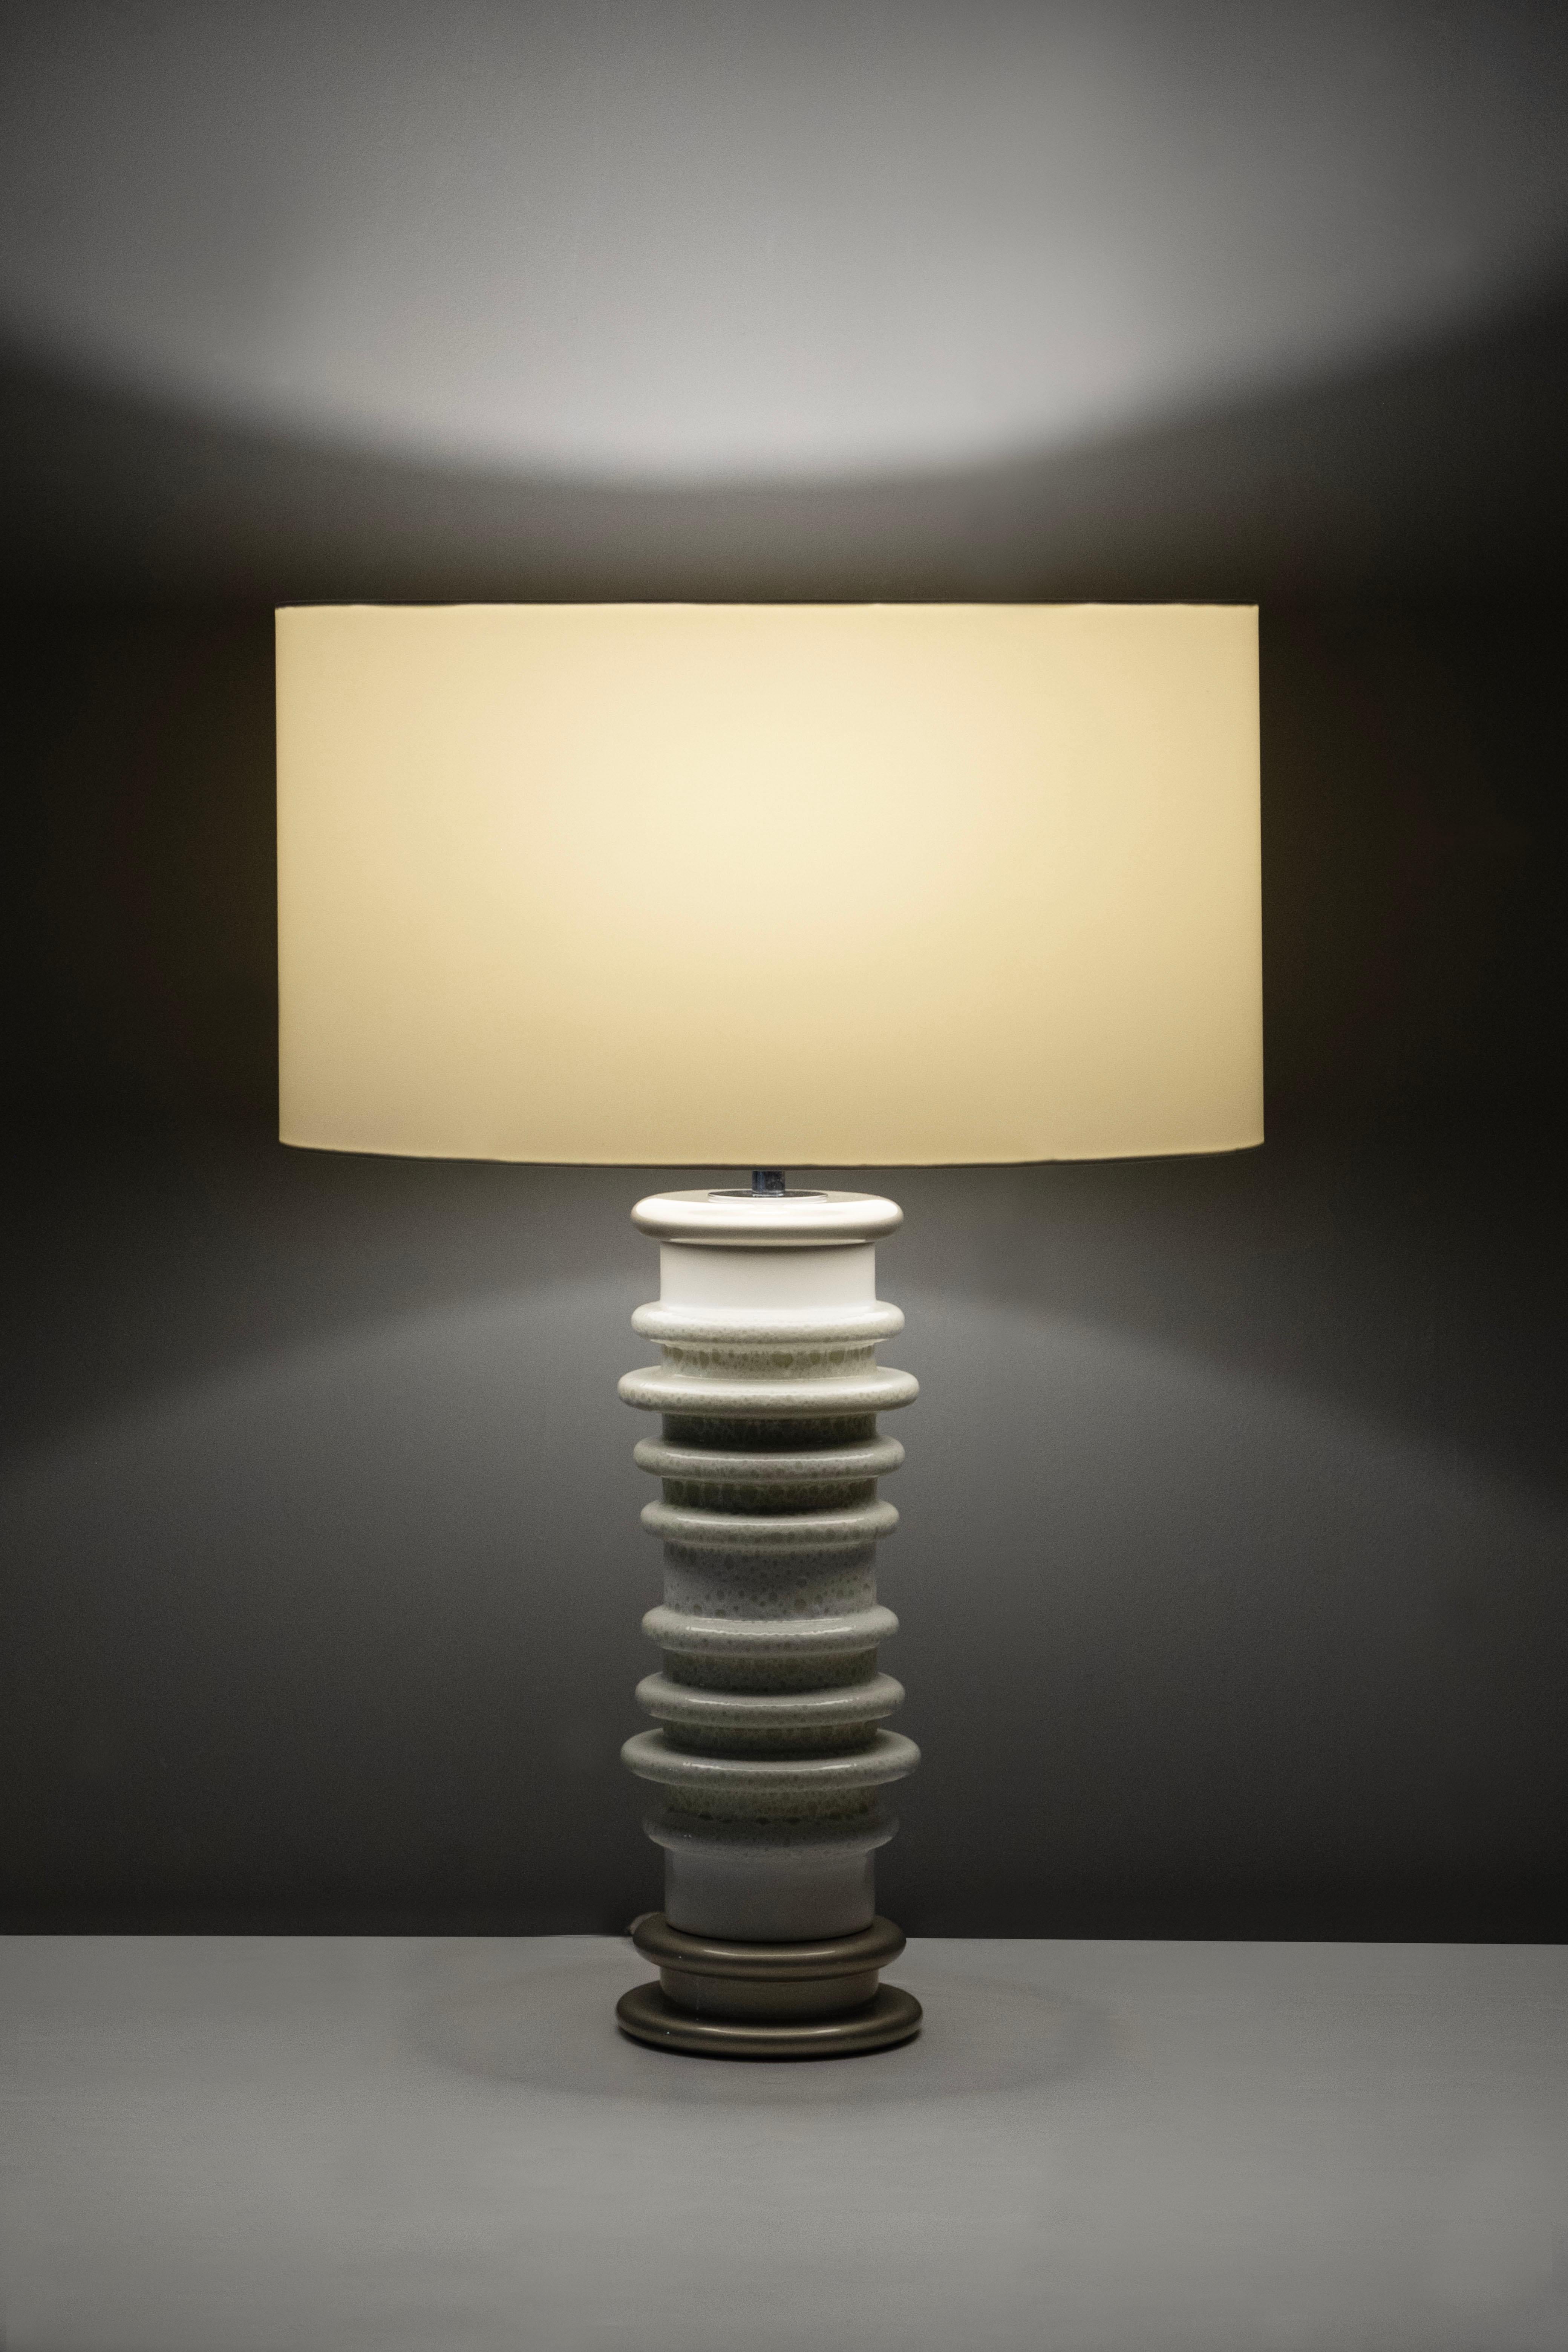 Lot de 2 lampes de table Gomes, Collection S, fabriquées à la main au Portugal - Europe par GF Modern.

Gomes est une lampe de table élégante et un complément attrayant pour une maison moderne. La base en céramique blanche avec des détails en bronze